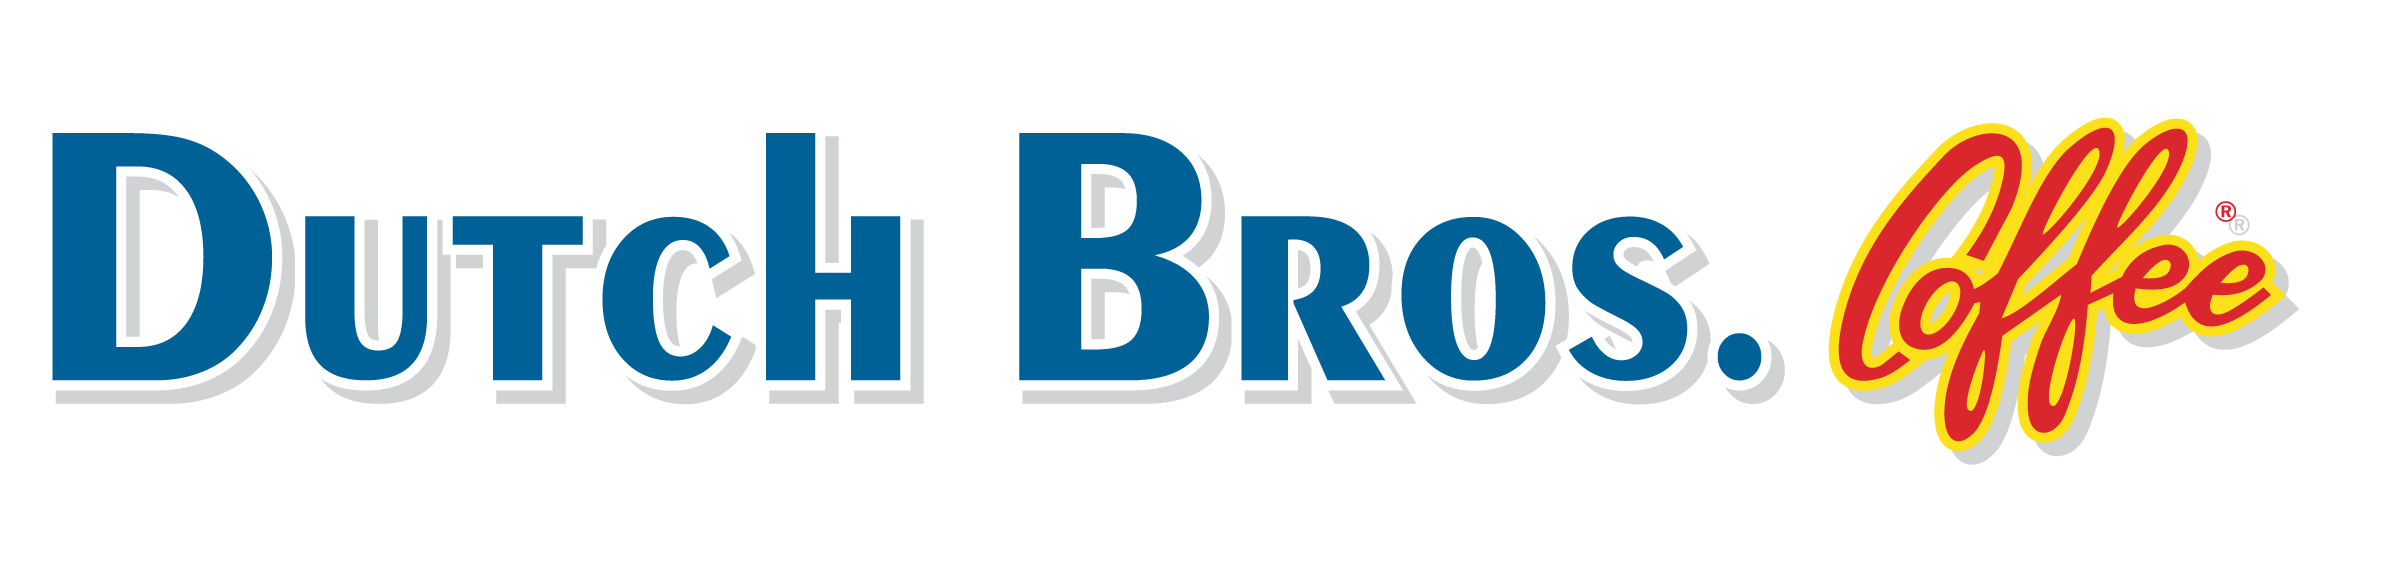 Dutch Bros Logo PNG Image Transparent PNG Free Download On SeekPNG